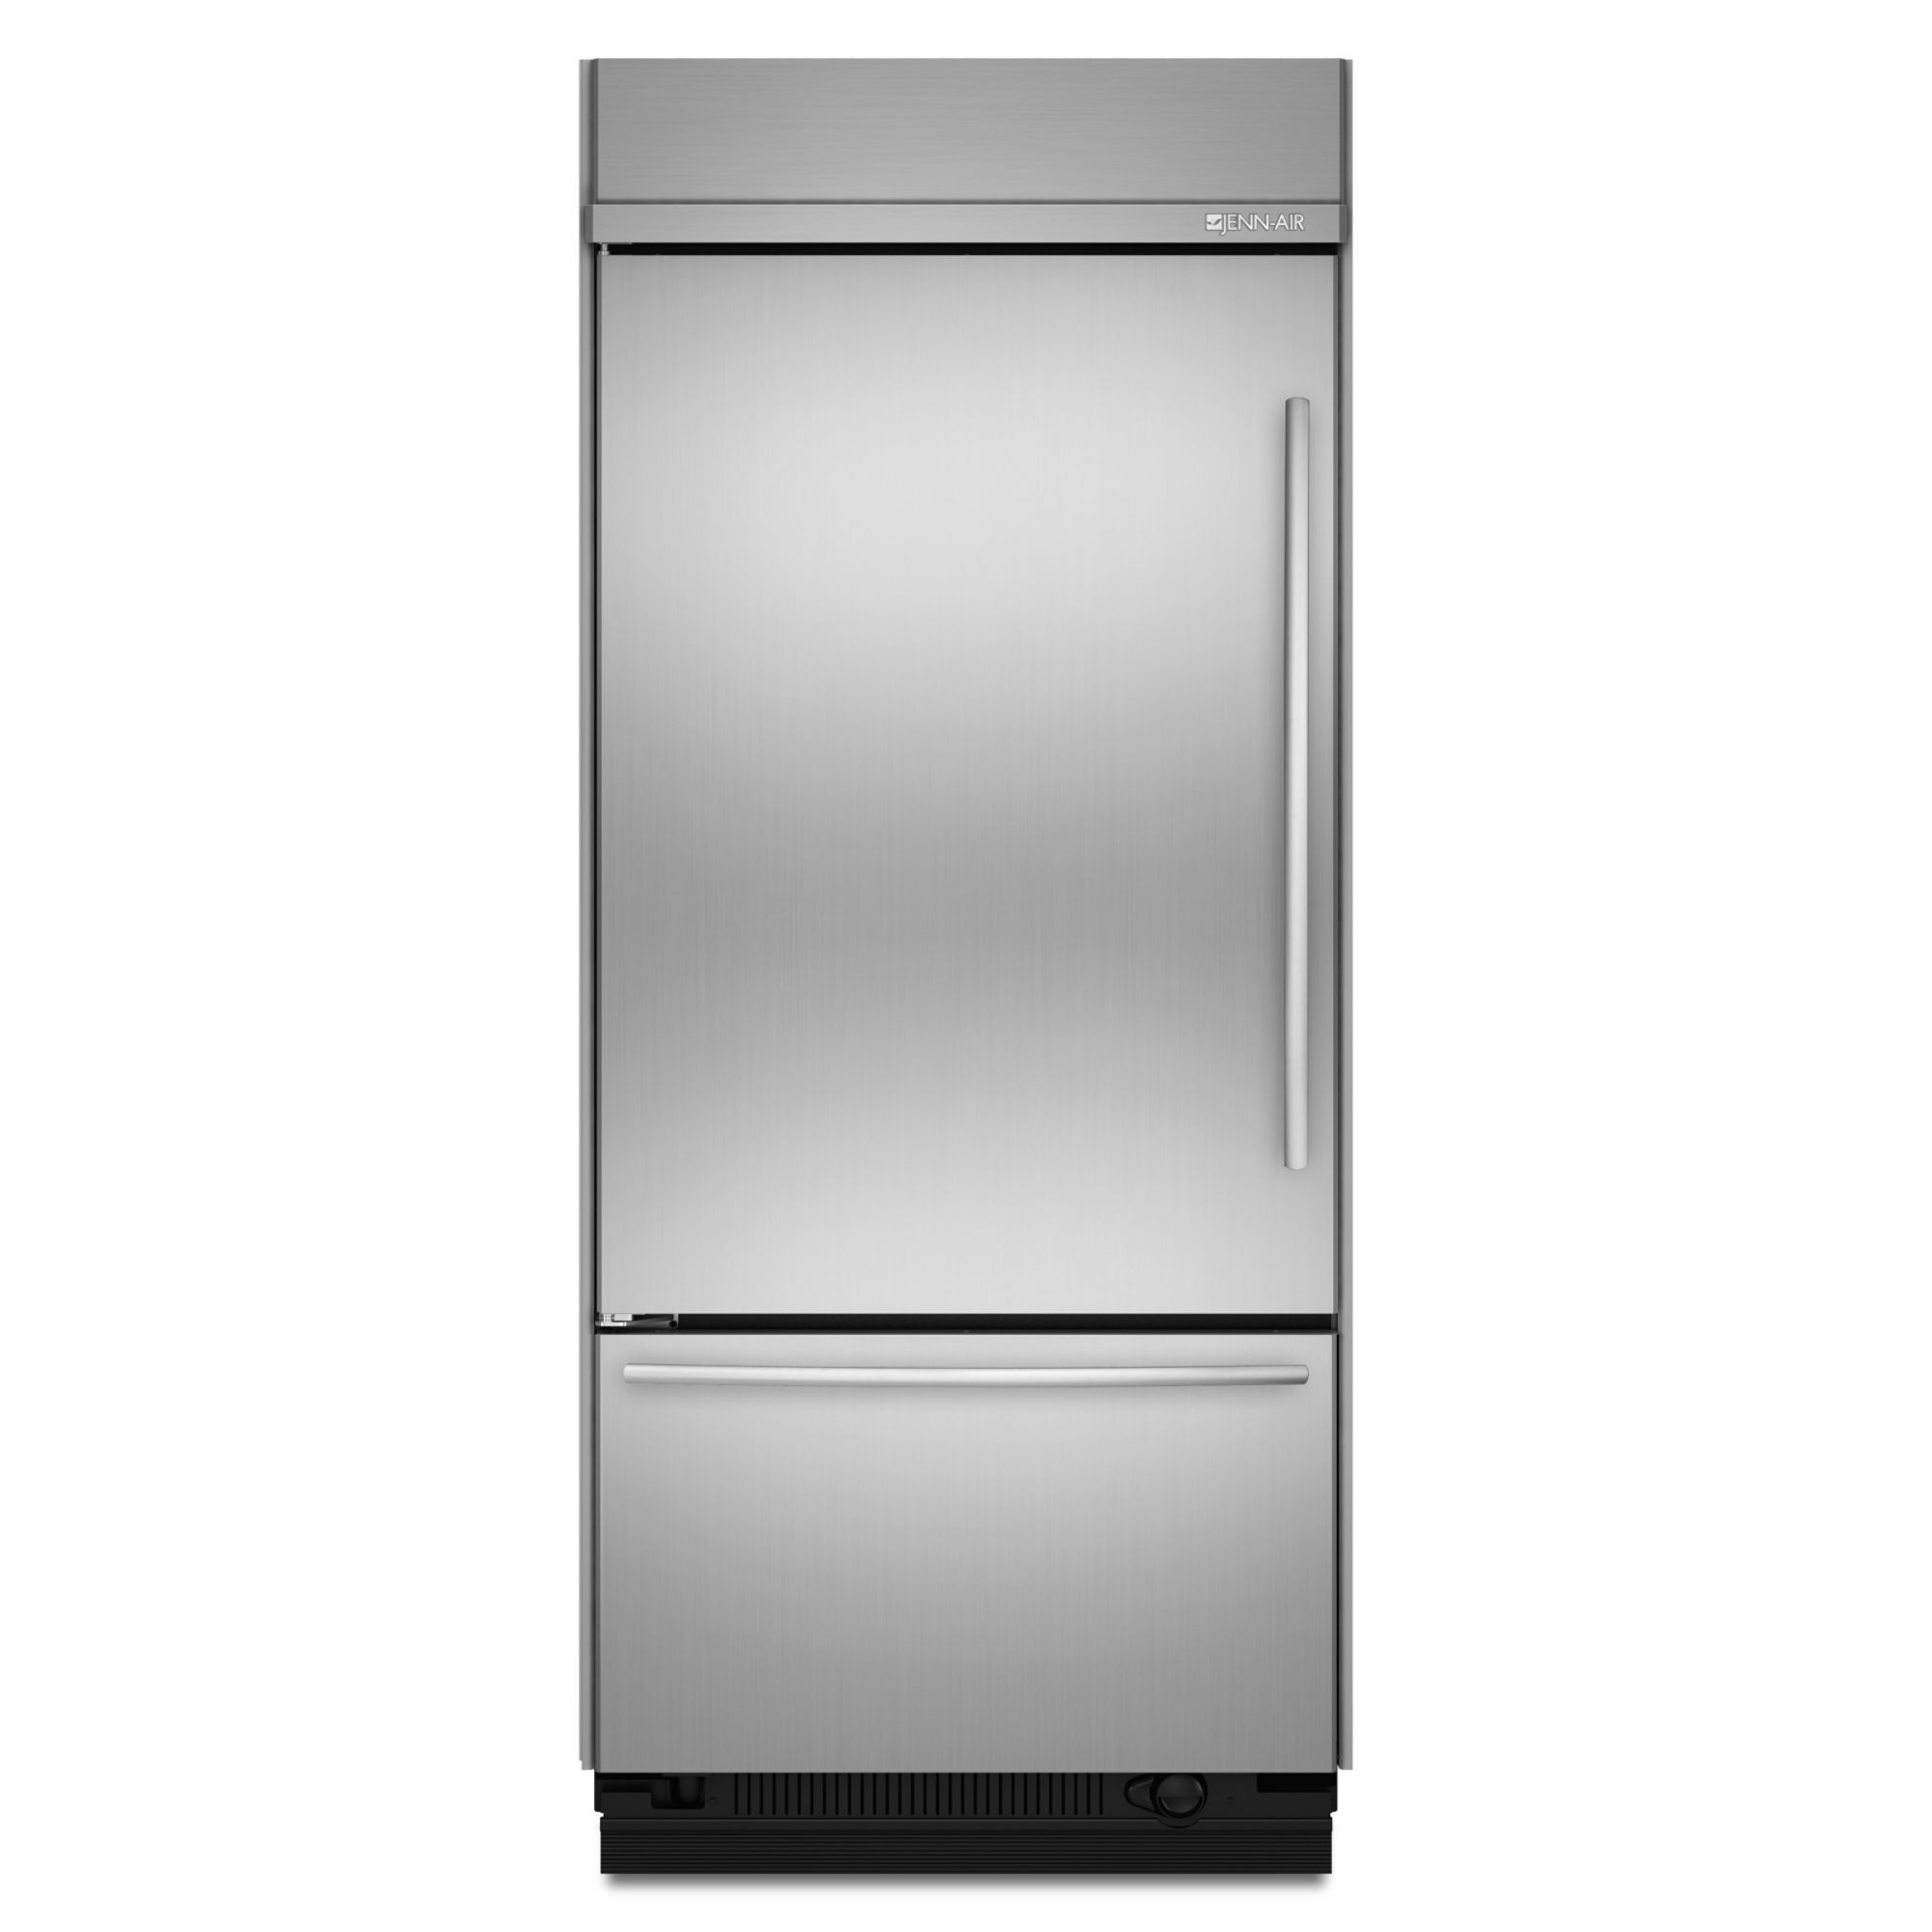 36" Built-In Refrigerator logo